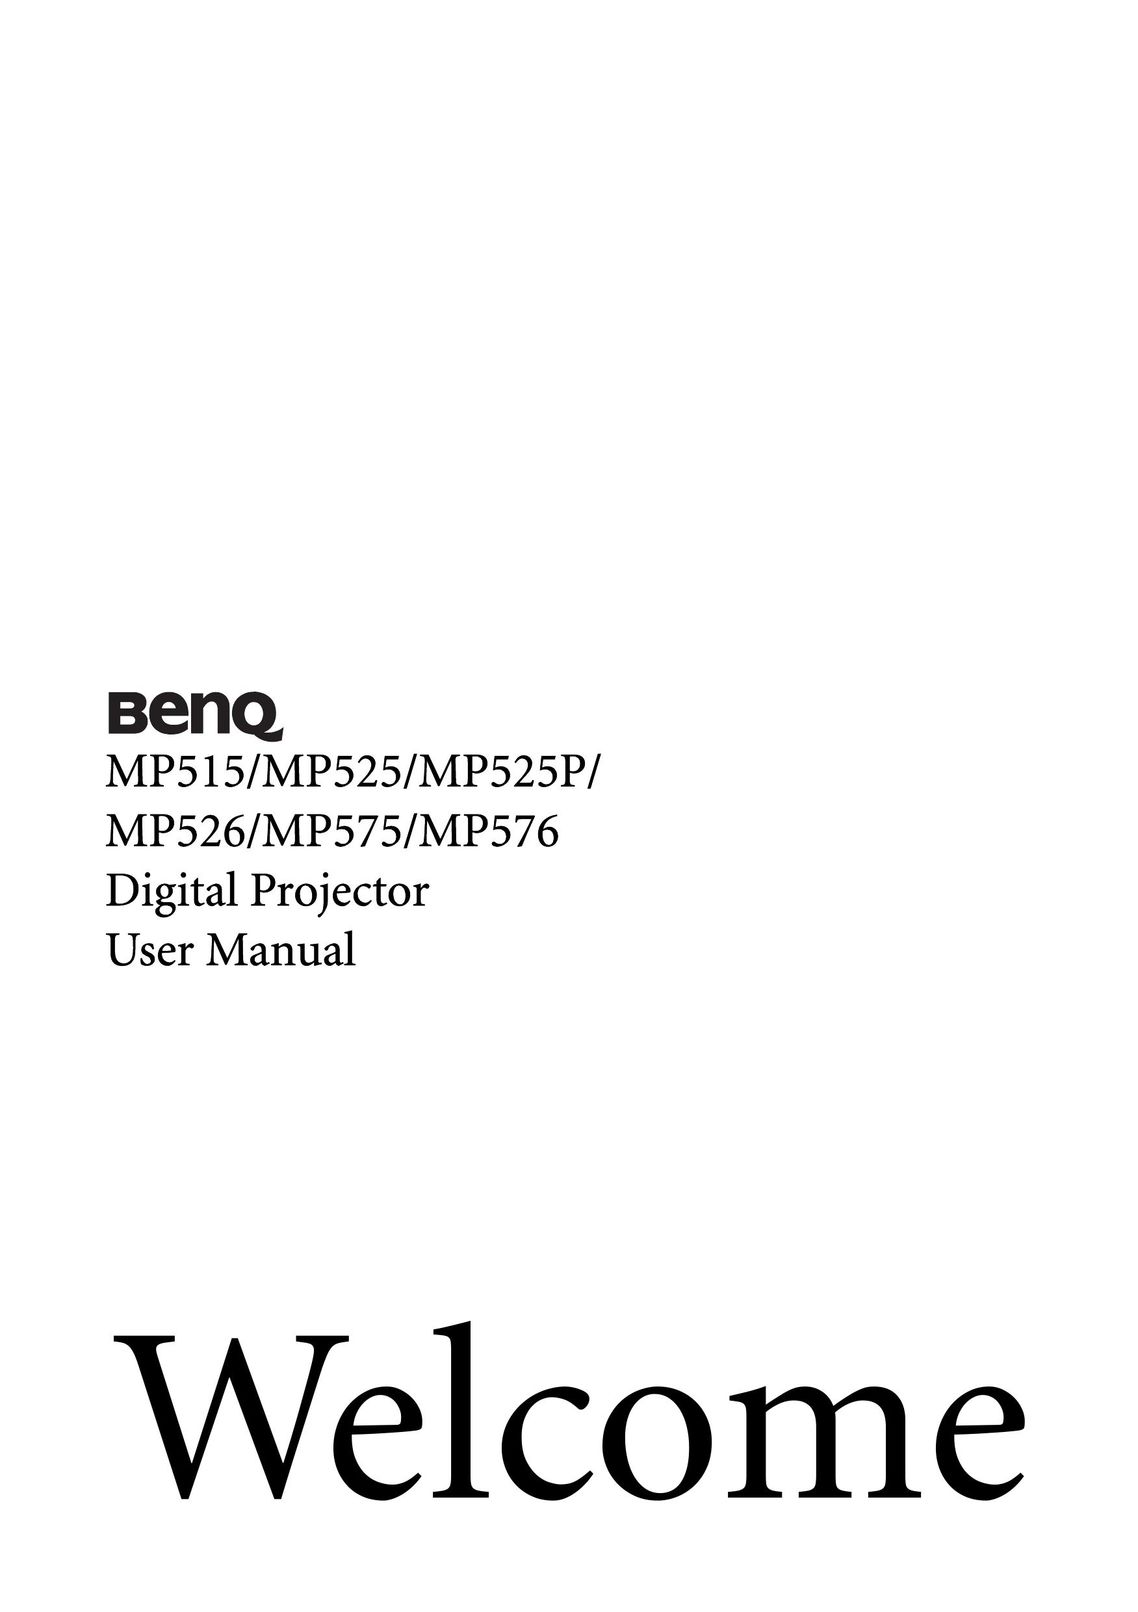 BenQ MP576 Projector User Manual